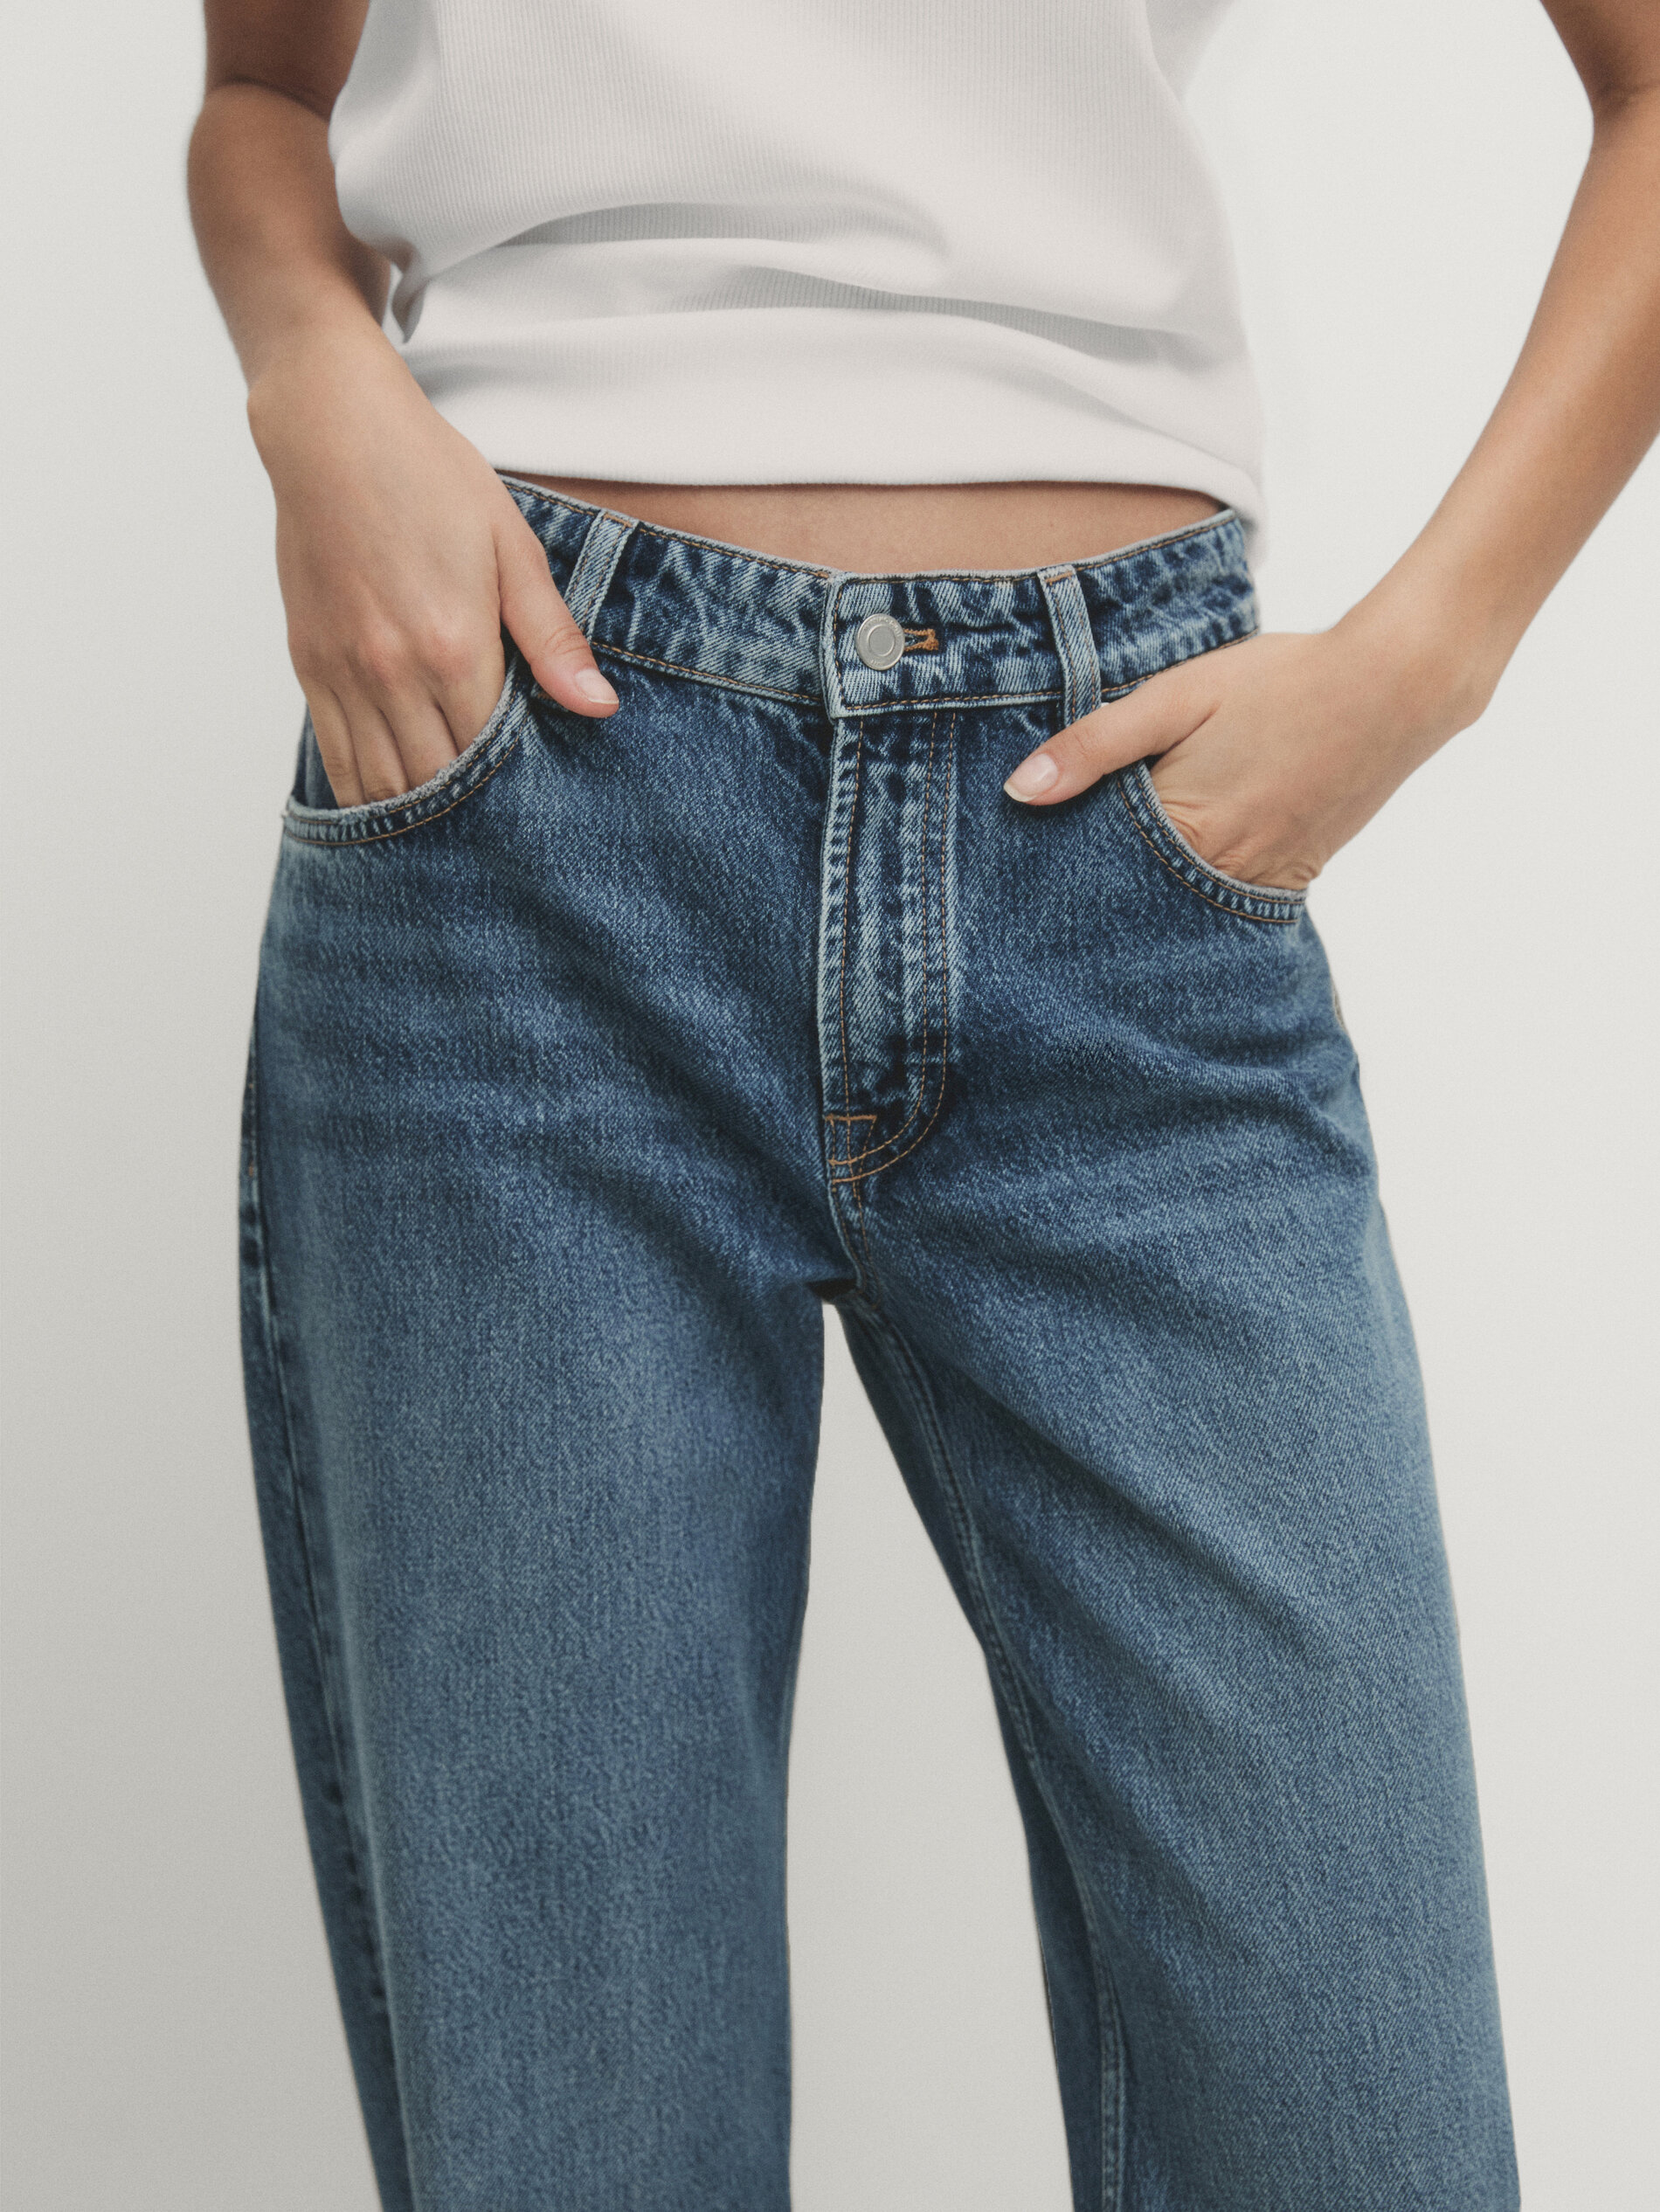 Jeans tiro bajo corte recto